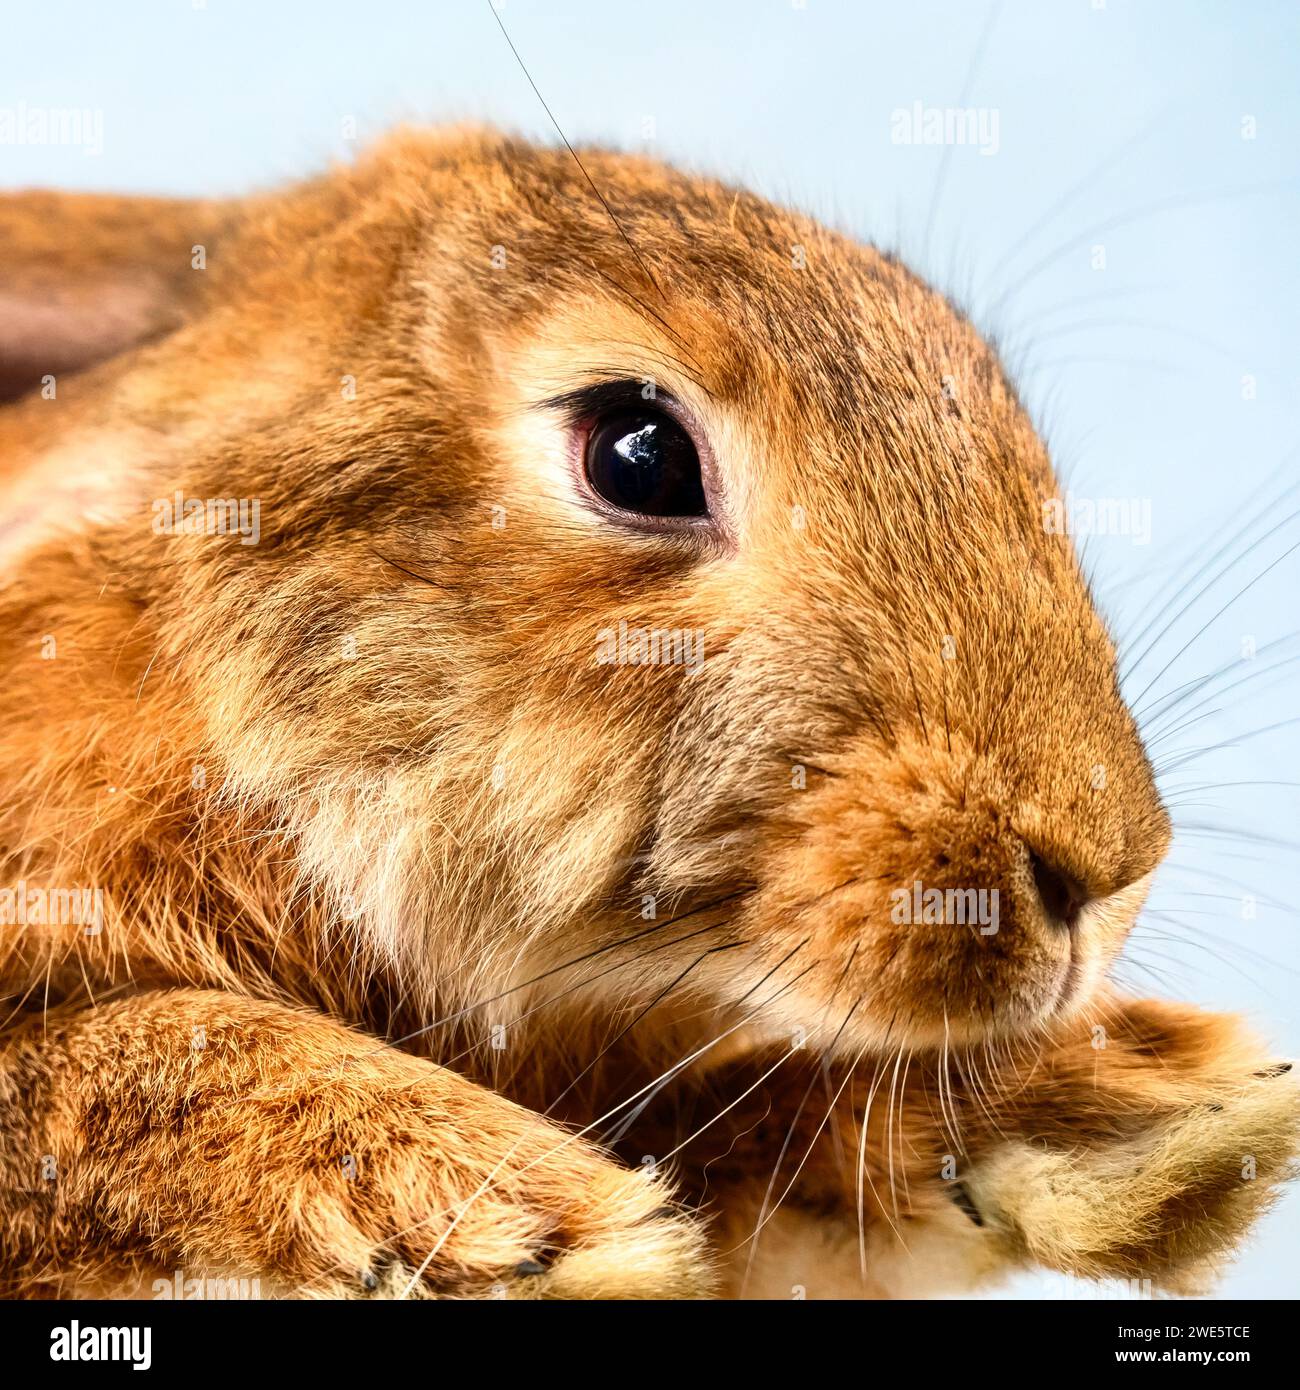 Brown rabbit or bunny pet, close-up Stock Photo